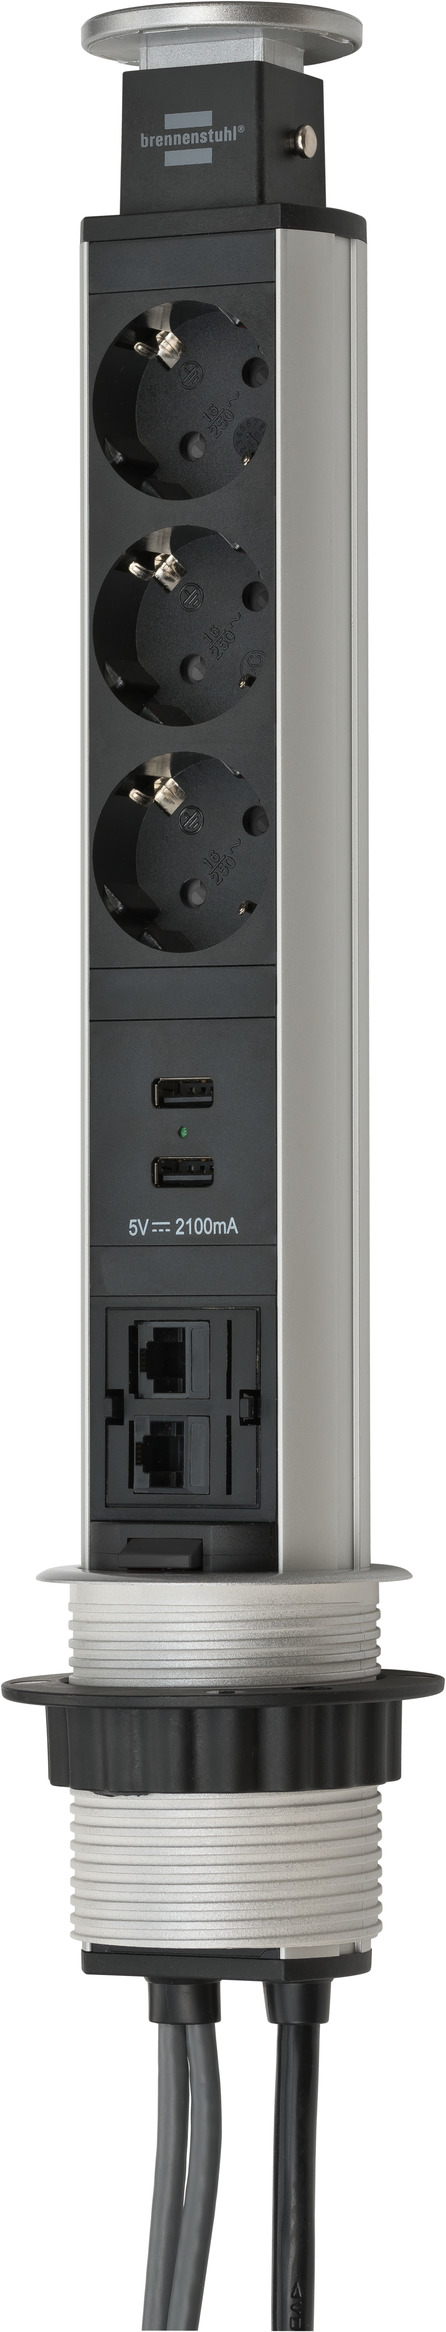 Bitterheid renderen Ewell Tower Power USB-oplader en LAN tafelstopcontact 3-voudig 2xLAN-RJ45, 2xUSB,  2m H05VV-F 3G1,5 zilver/zwart | brennenstuhl®